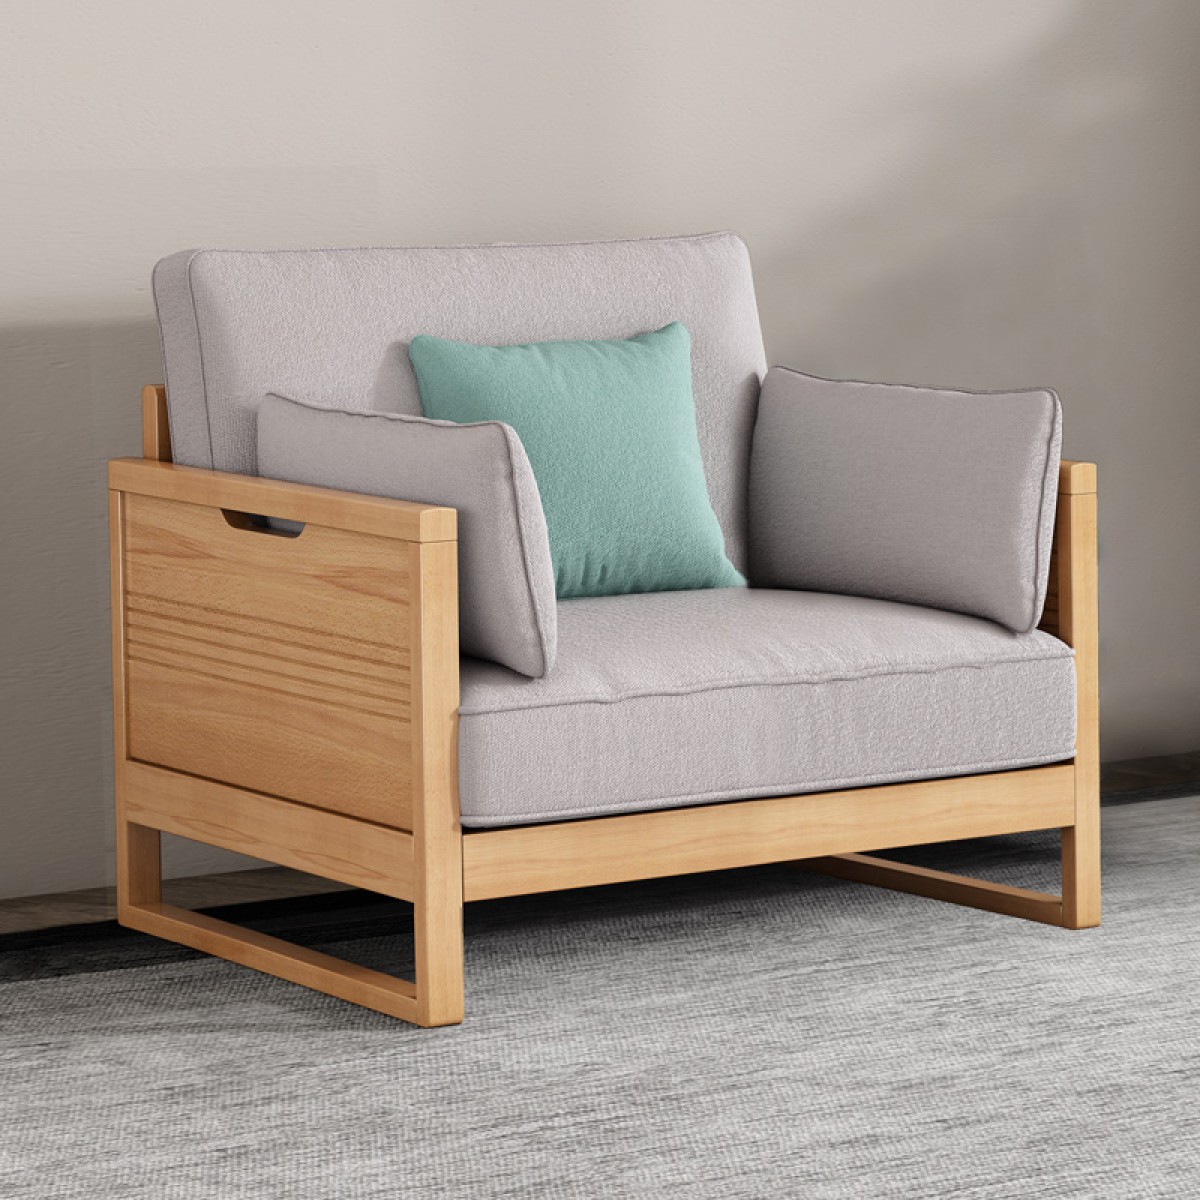 百方现代简约榉木沙发实木布艺沙发书房沙发小户型客厅简易单人沙发QC